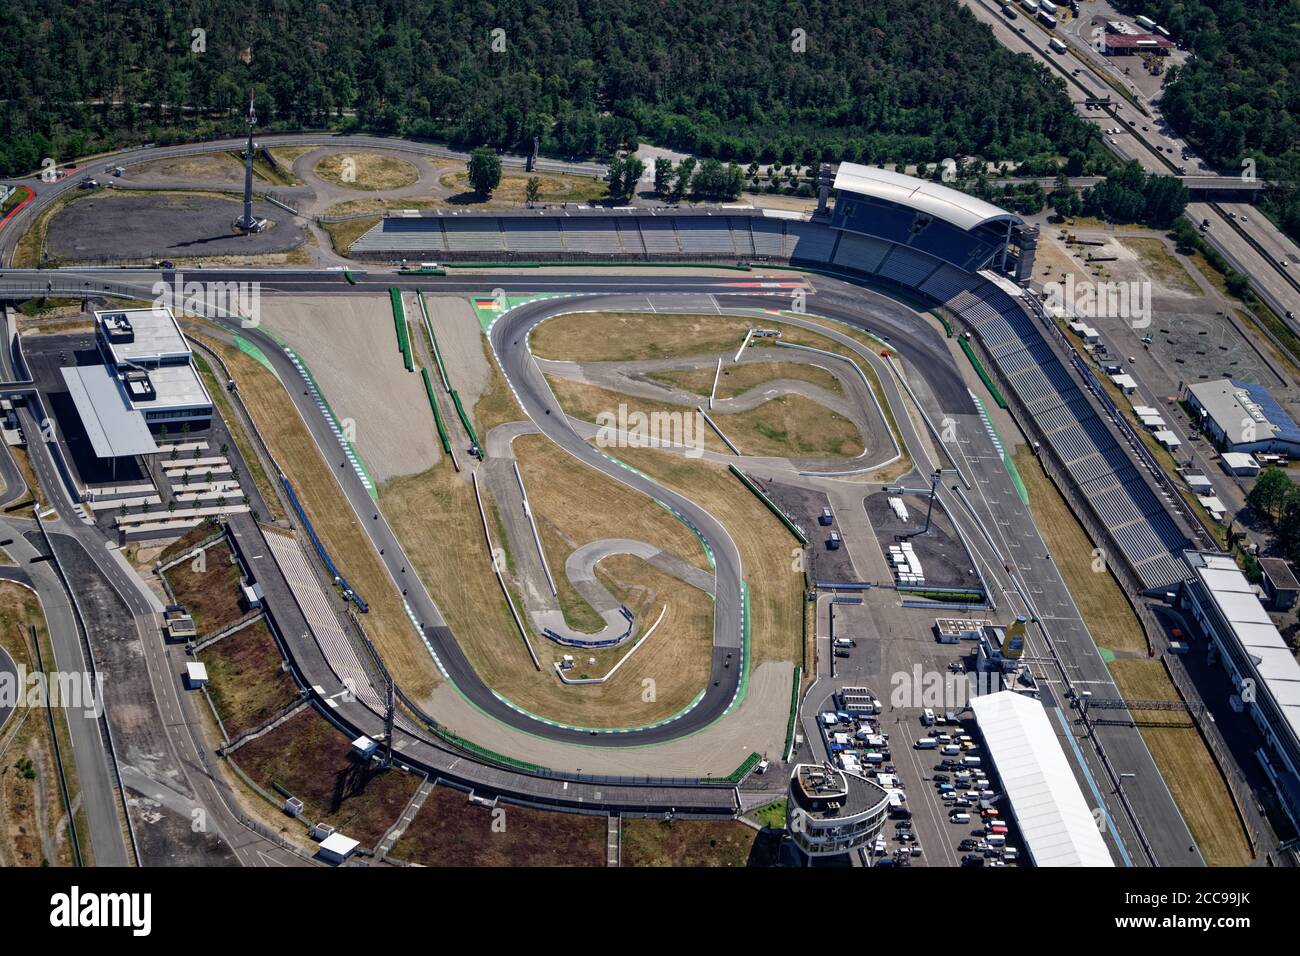 Veduta aerea del circuito di Hockenheim, famoso circuito dove si svolge ogni due anni il Gran Premio di Germania. Il Motodrom può contenere fino a 120,000 visitatori. Foto Stock